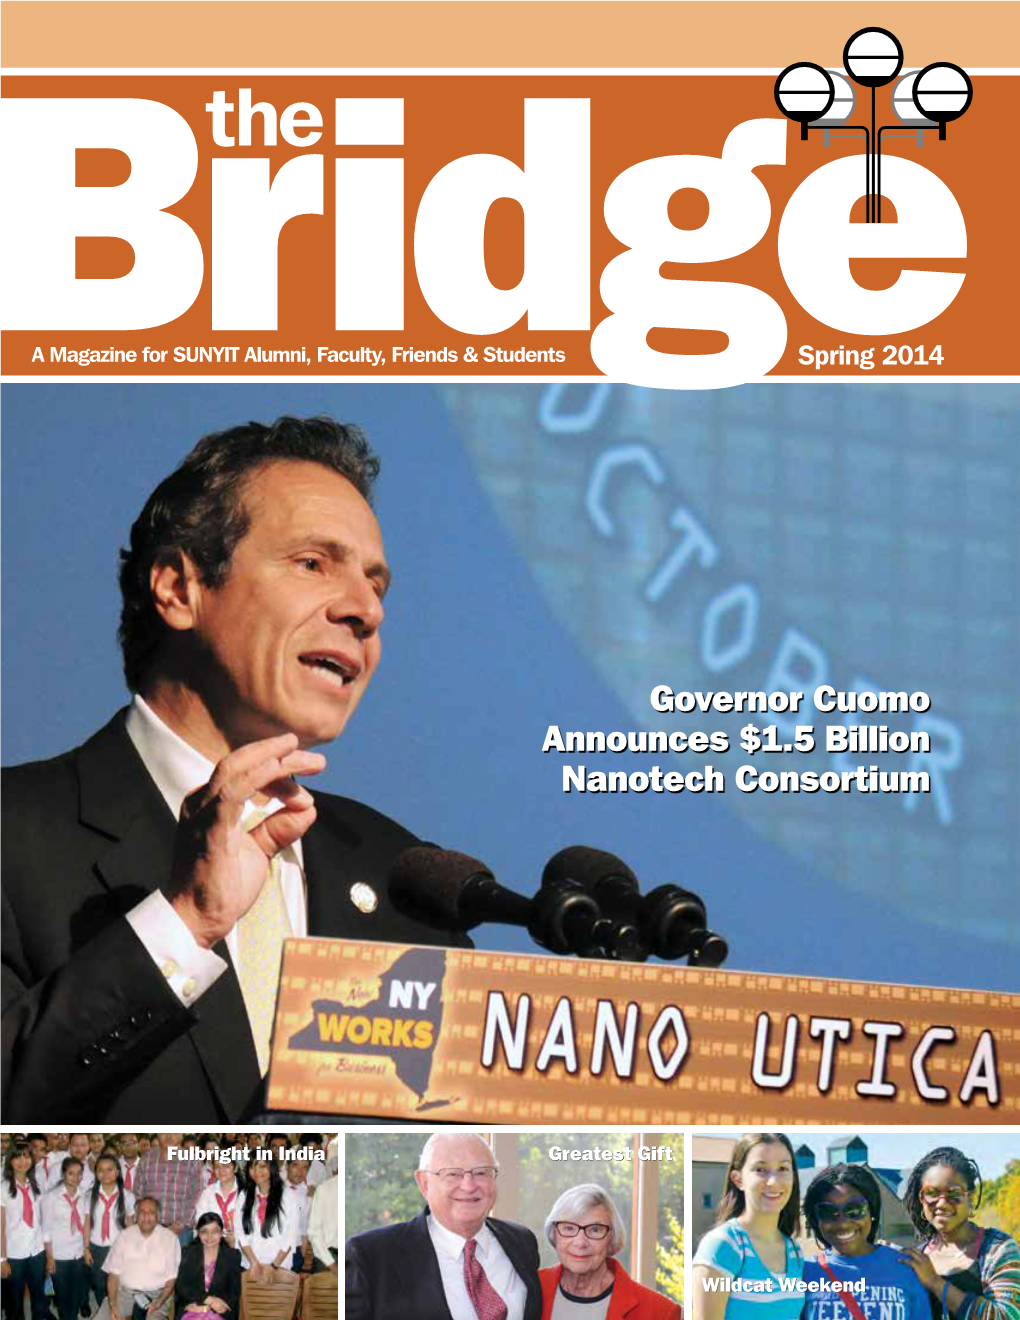 Governor Cuomo Announces $1.5 Billion Nanotech Consortium